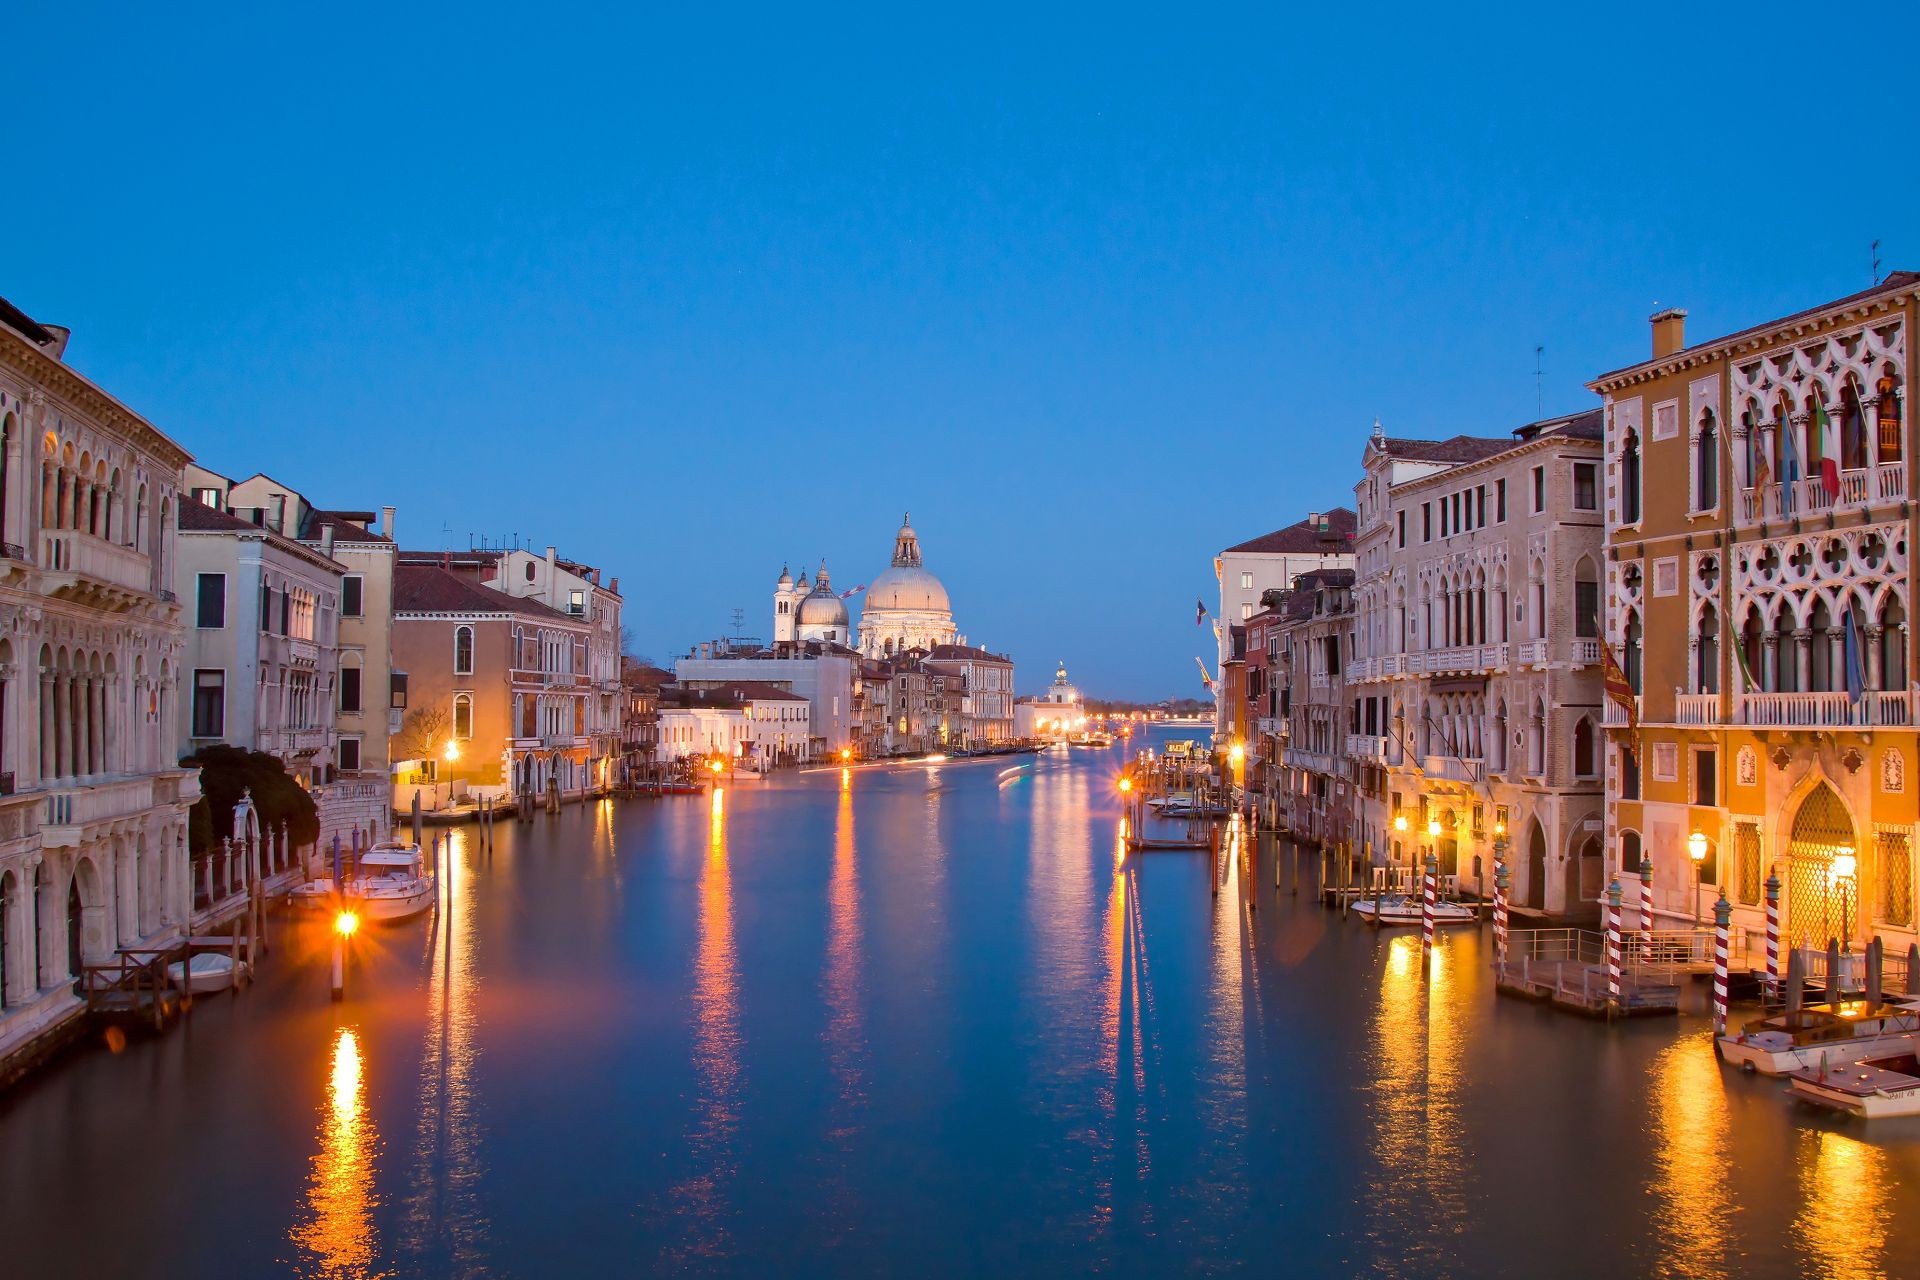 города воды канал путешествия архитектура сумрак на открытом воздухе венецианец закат вечером дом мост подсветкой река отражение гондолы туризм небо город